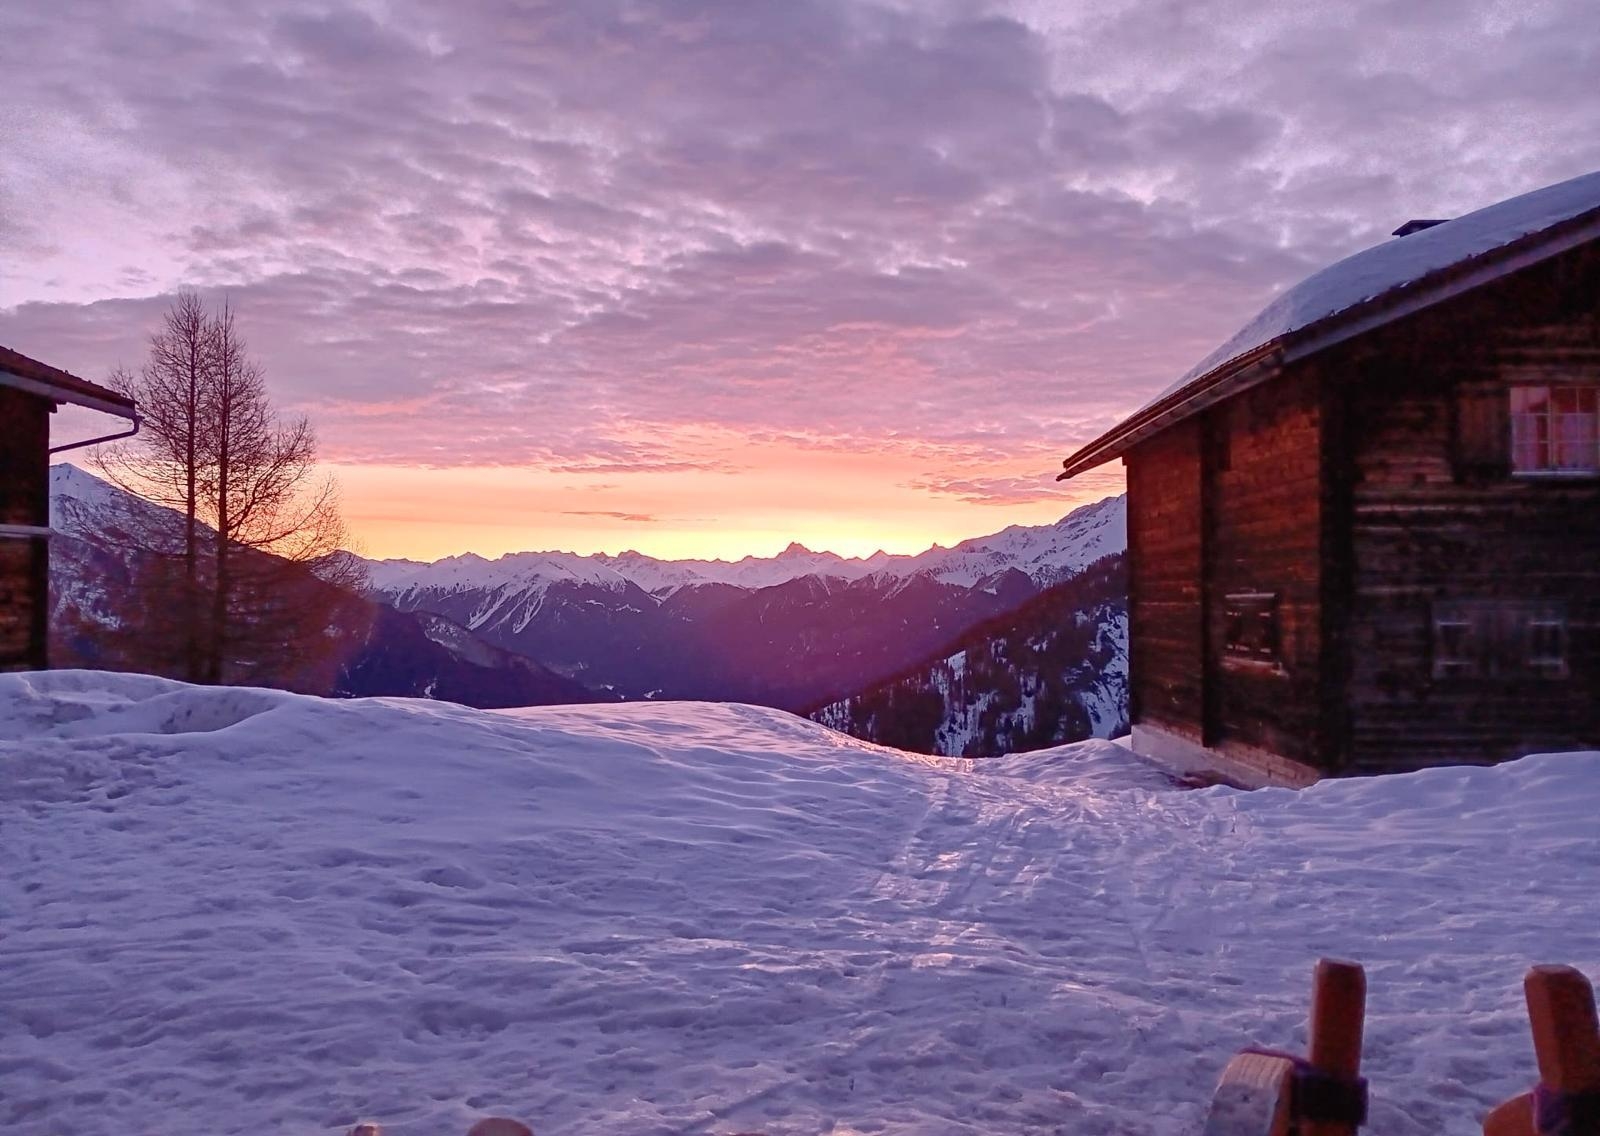 Noch etwas Bergluft schnuppern und den Winter verabschieden.
#Berge#Schweiz#BündnerBergdorf
#Sonnenaufgang
#Winter#Schnee